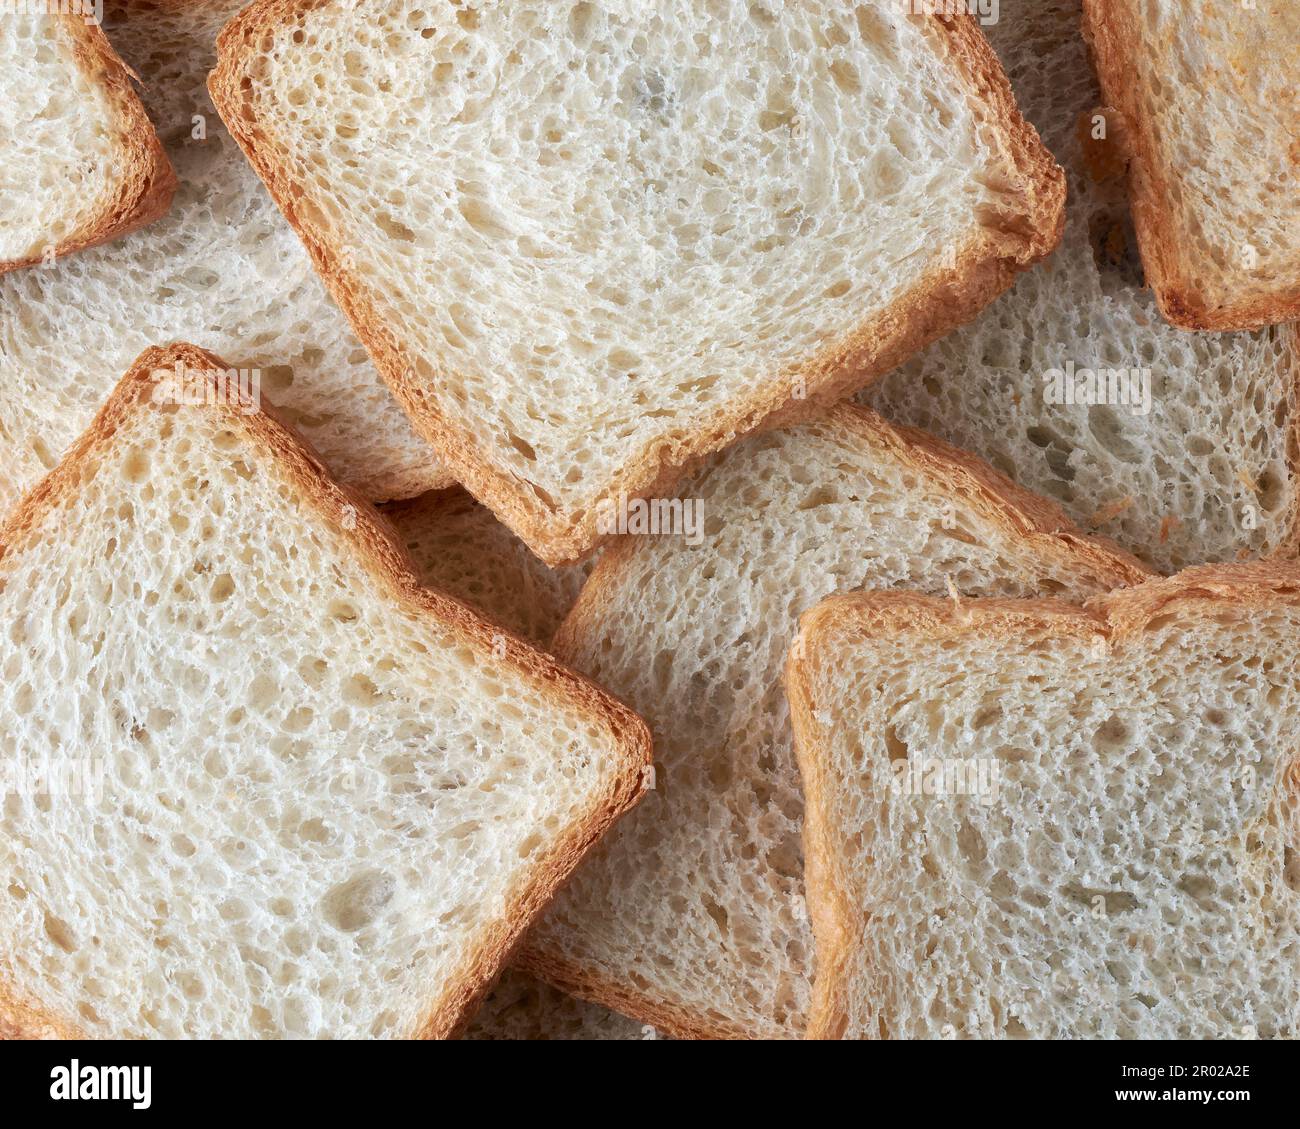 fetta di pane bianco a cornice intera, cibo popolare in molte culture e utilizzato per preparare panini, toast e altri piatti, di colore più chiaro Foto Stock